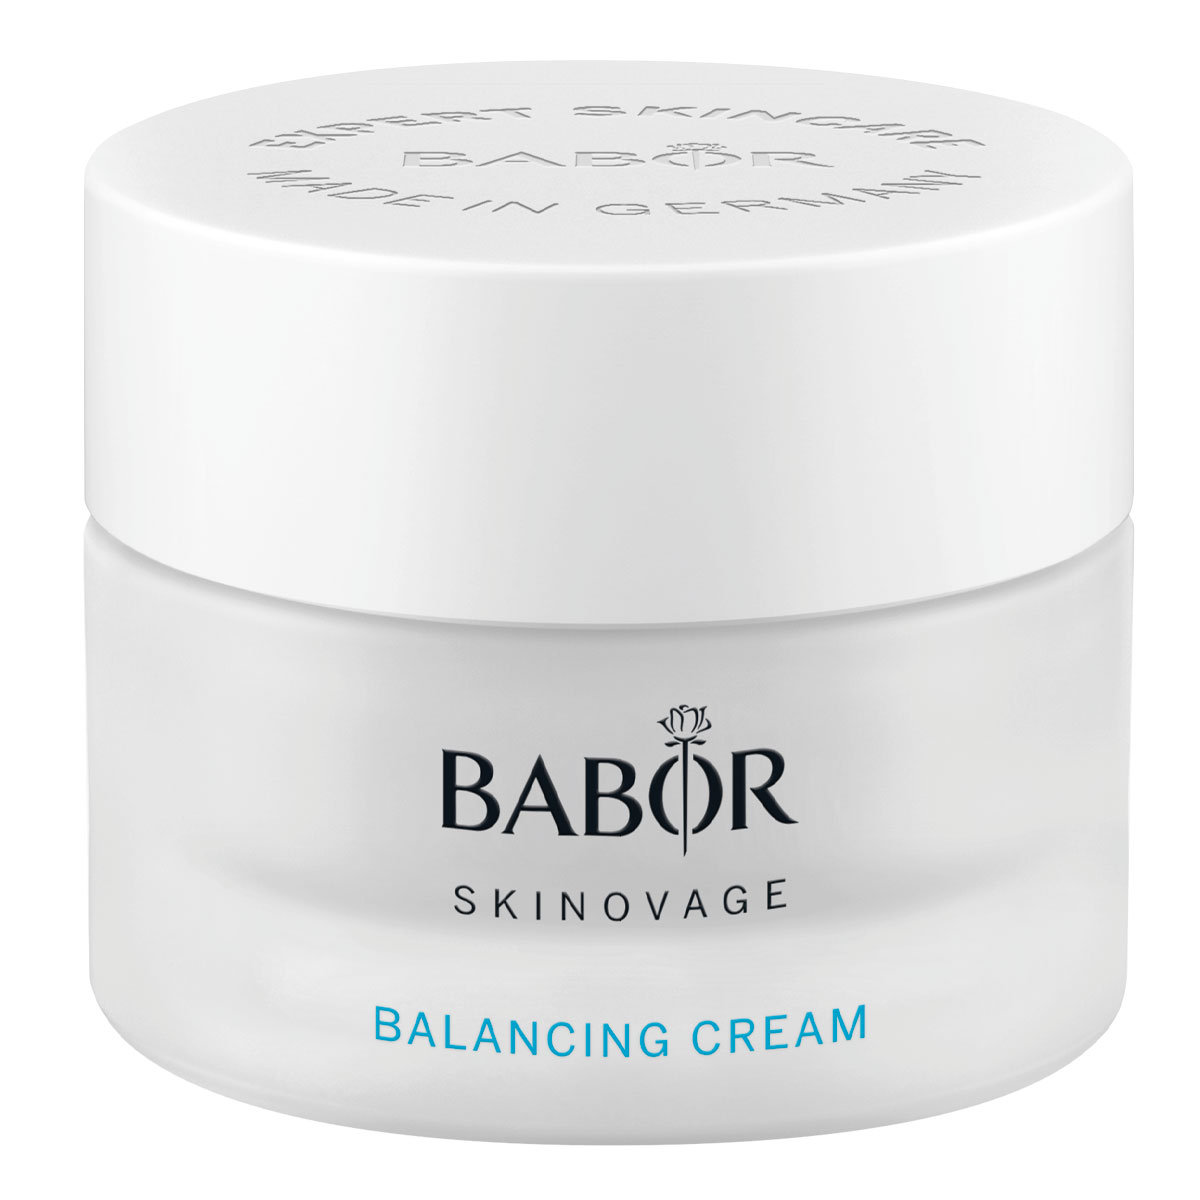 BABOR Skinovage Balancing Cream 50ml - интернет-магазин профессиональной косметики Spadream, изображение 41733